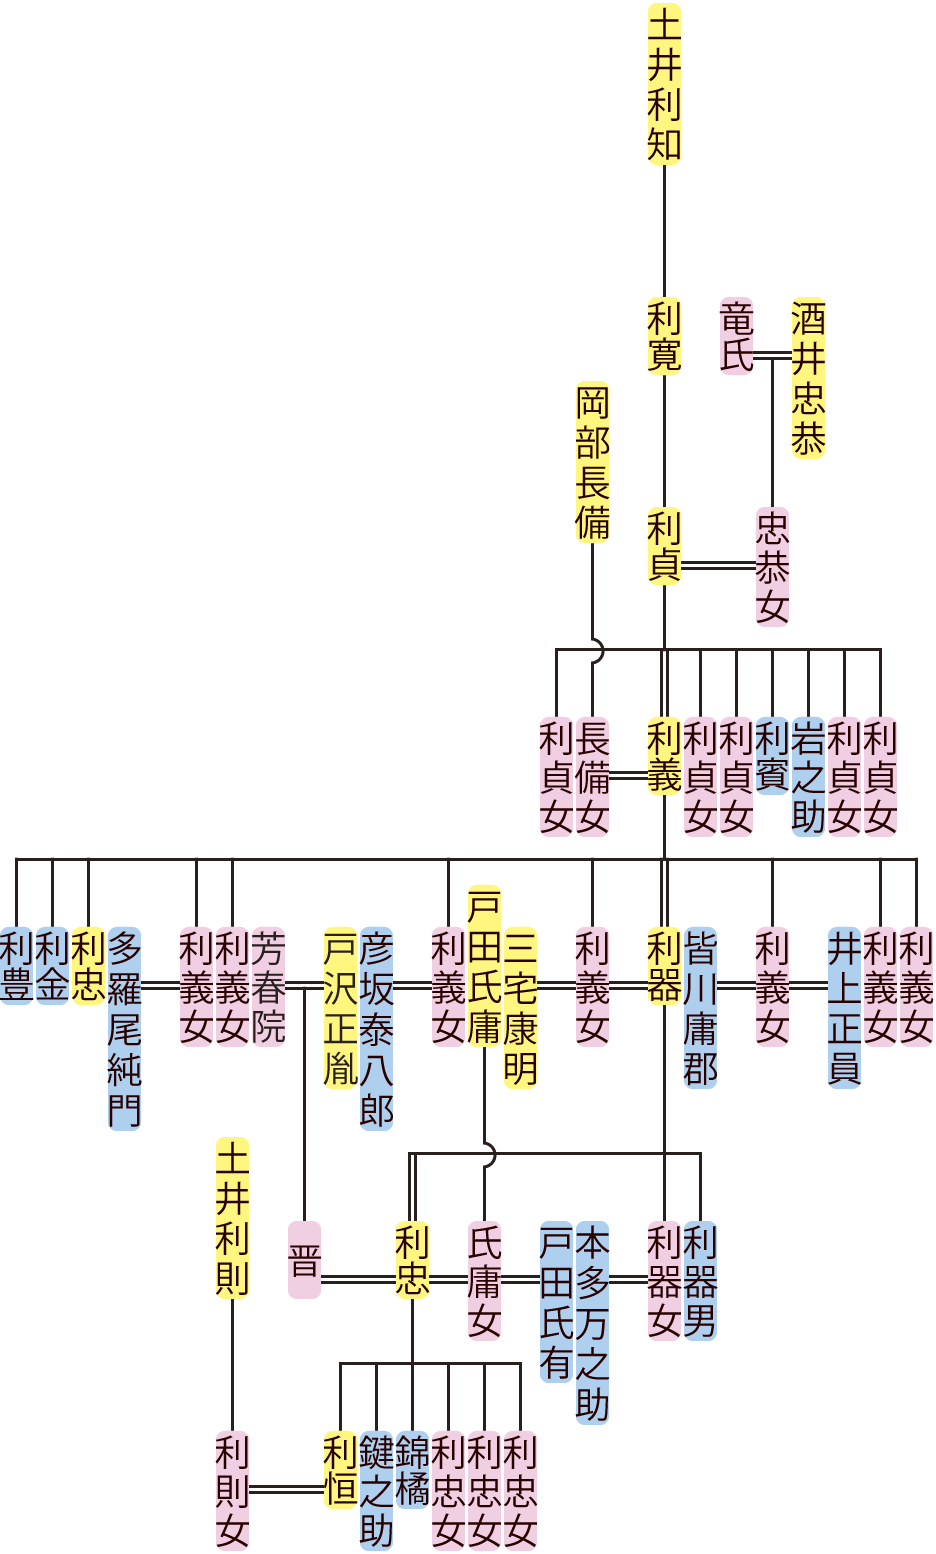 土井利貞～利恒の系図